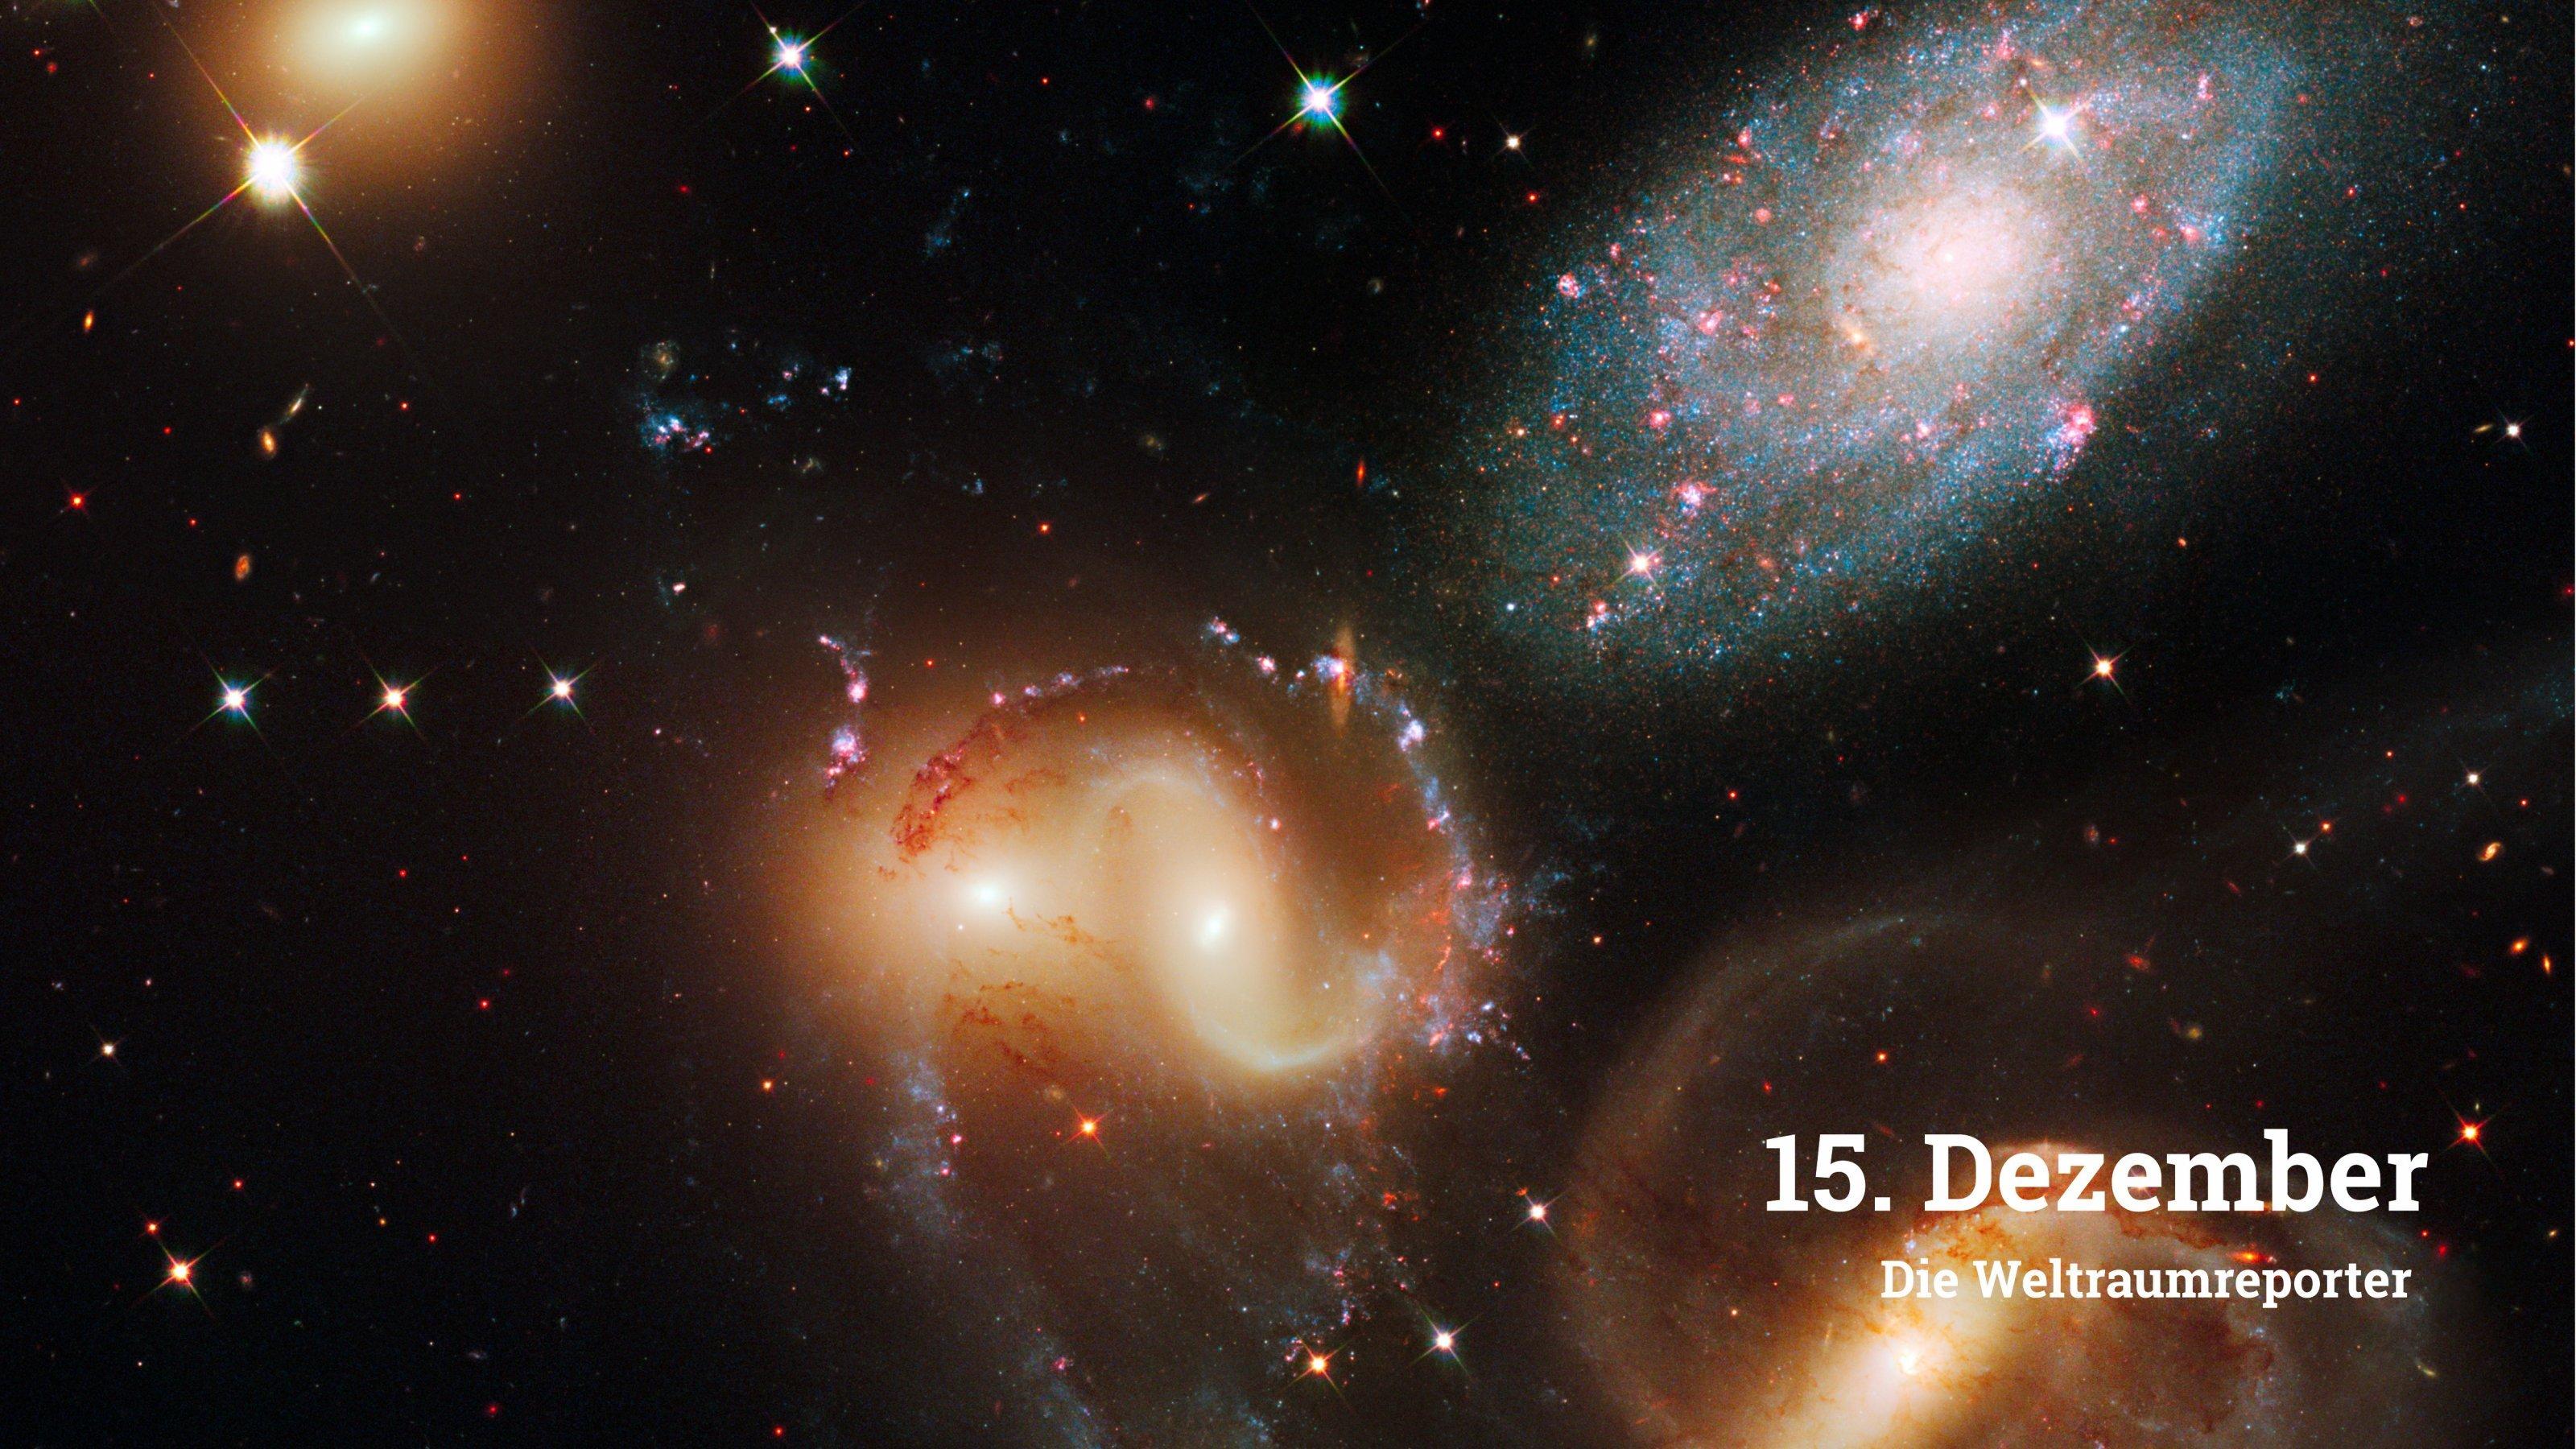 Fünfgalaxien, bekannt als Stephans Quintett, stehen hier nah zusammen am Himmel. Neben den beiden engen, gelblichen Galaxien in der Bildmitte sind rechts zwei weitere zusehen. Eine fünfte, etwas kleinere befindet sich weiter links im Bild.